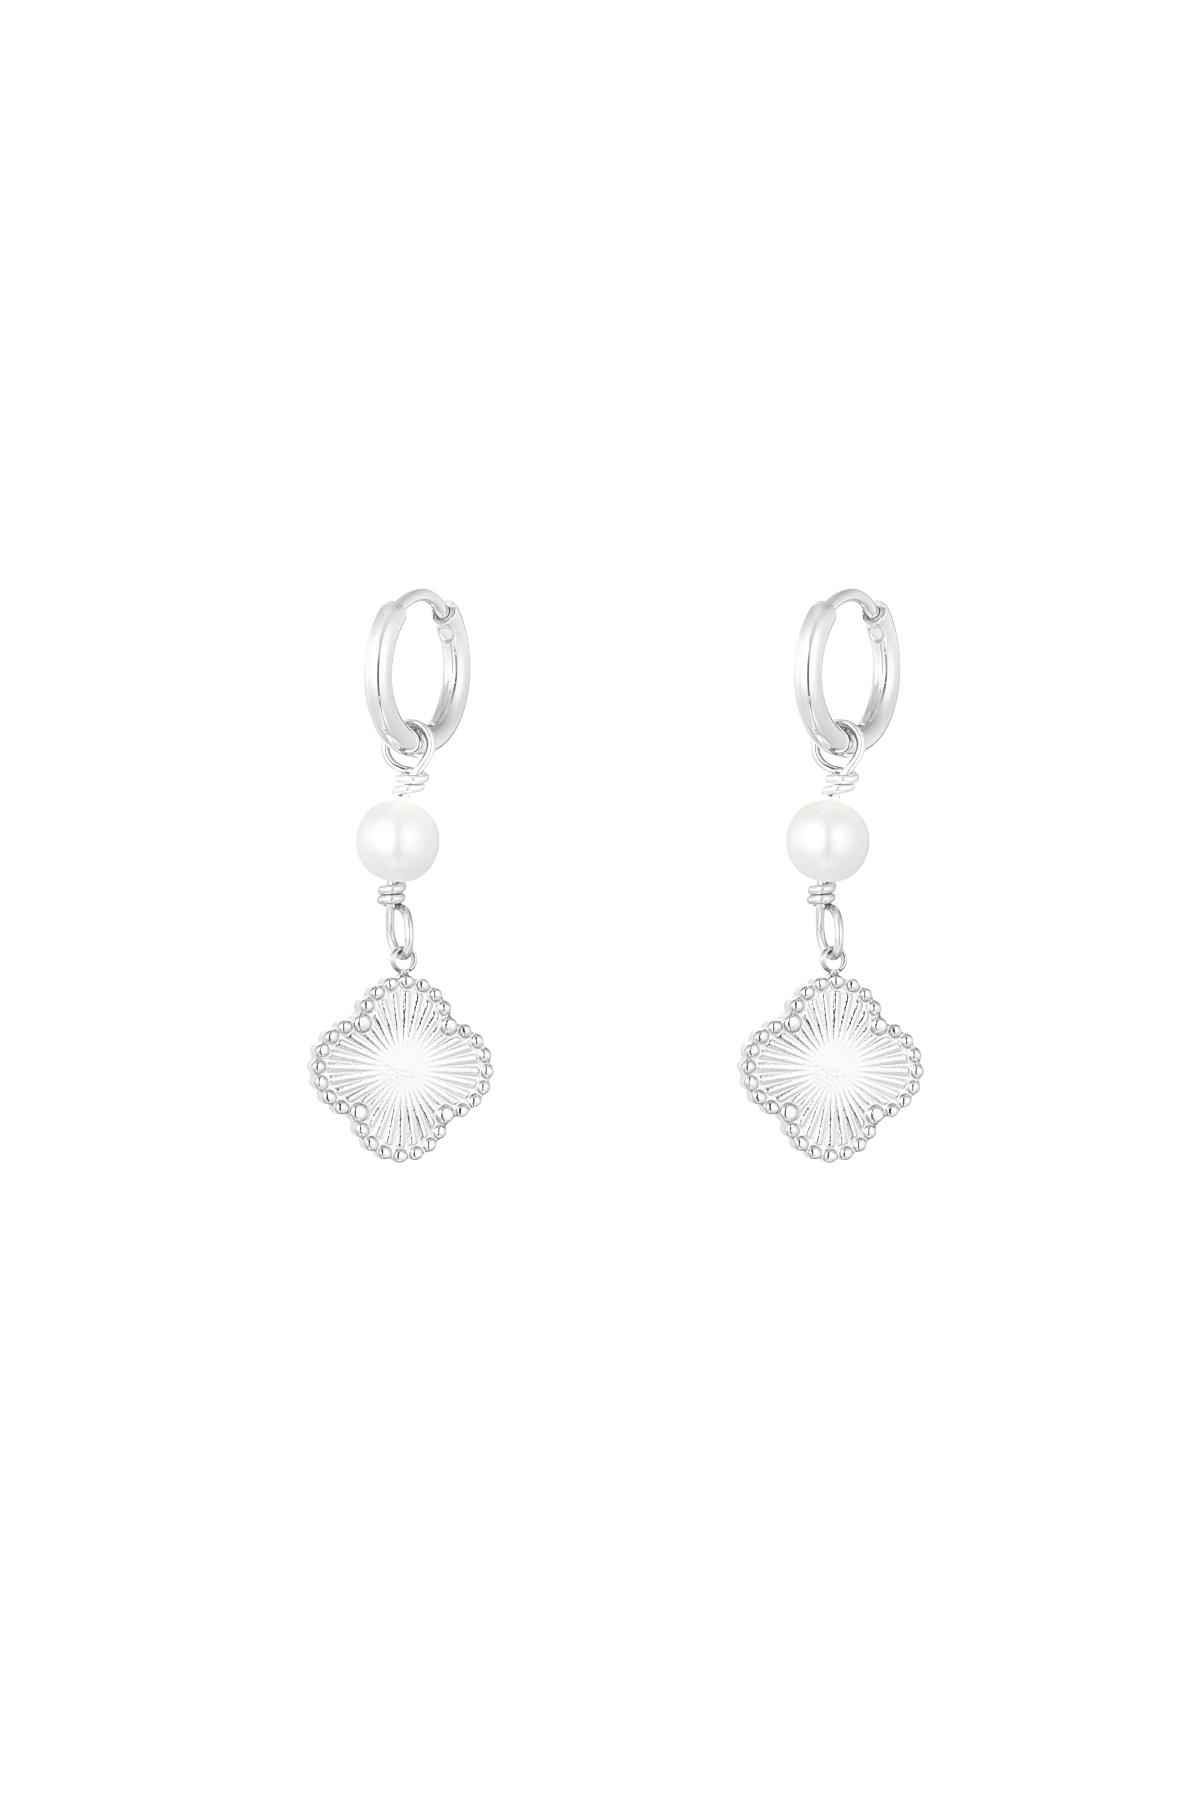 Earrings clover pearl dream - silver